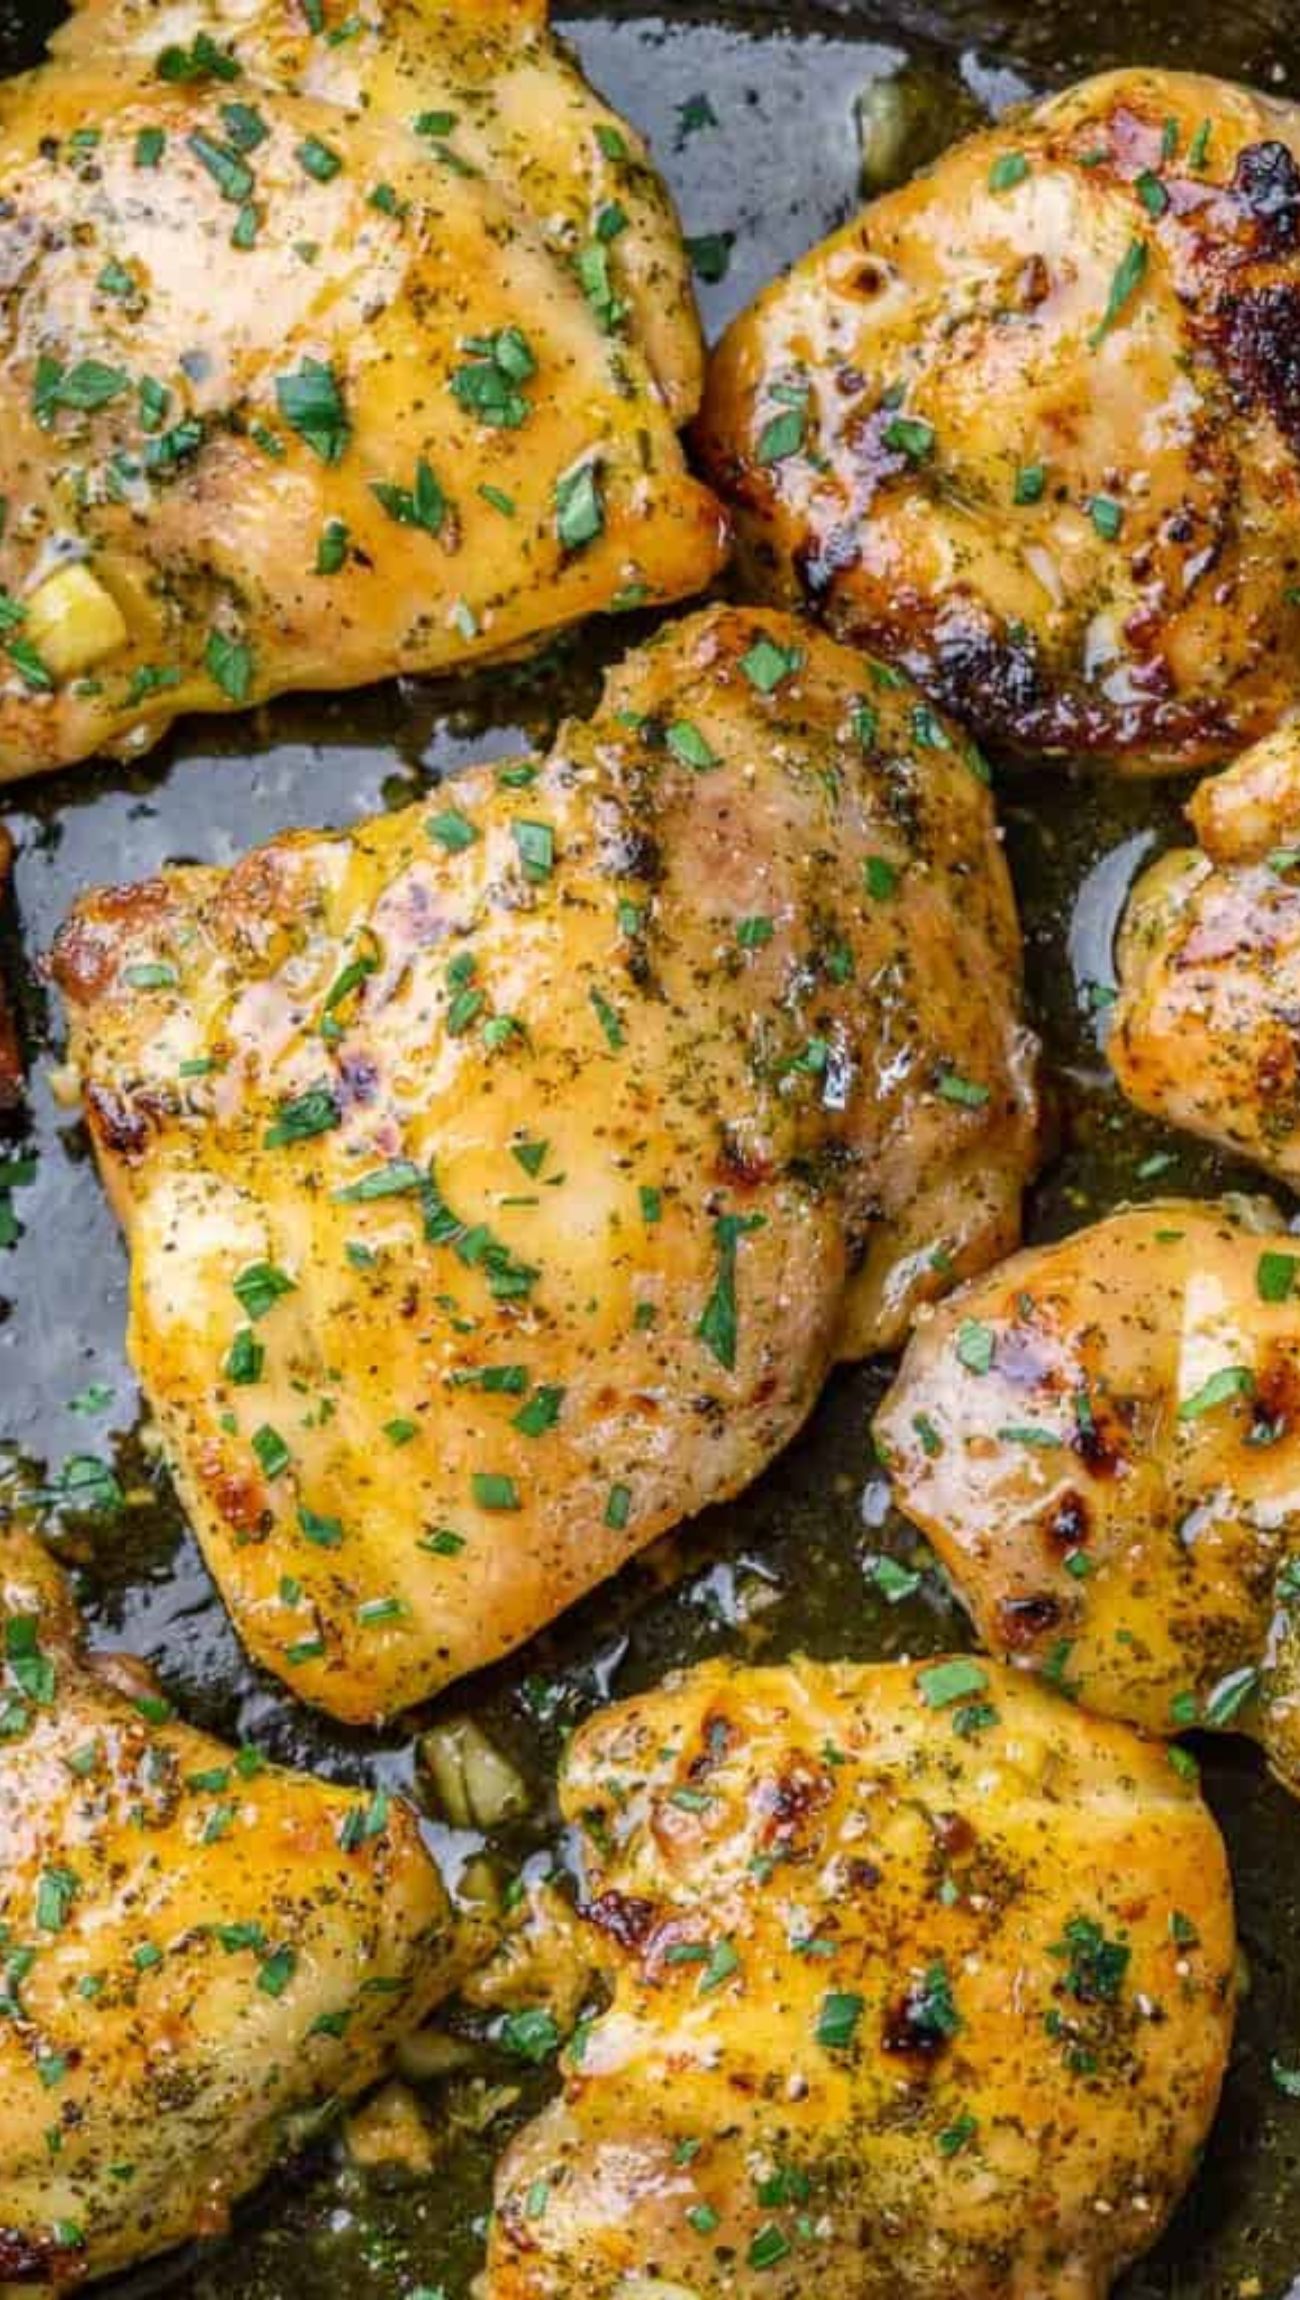 How to make boneless chicken thighs recipe - Imyobe